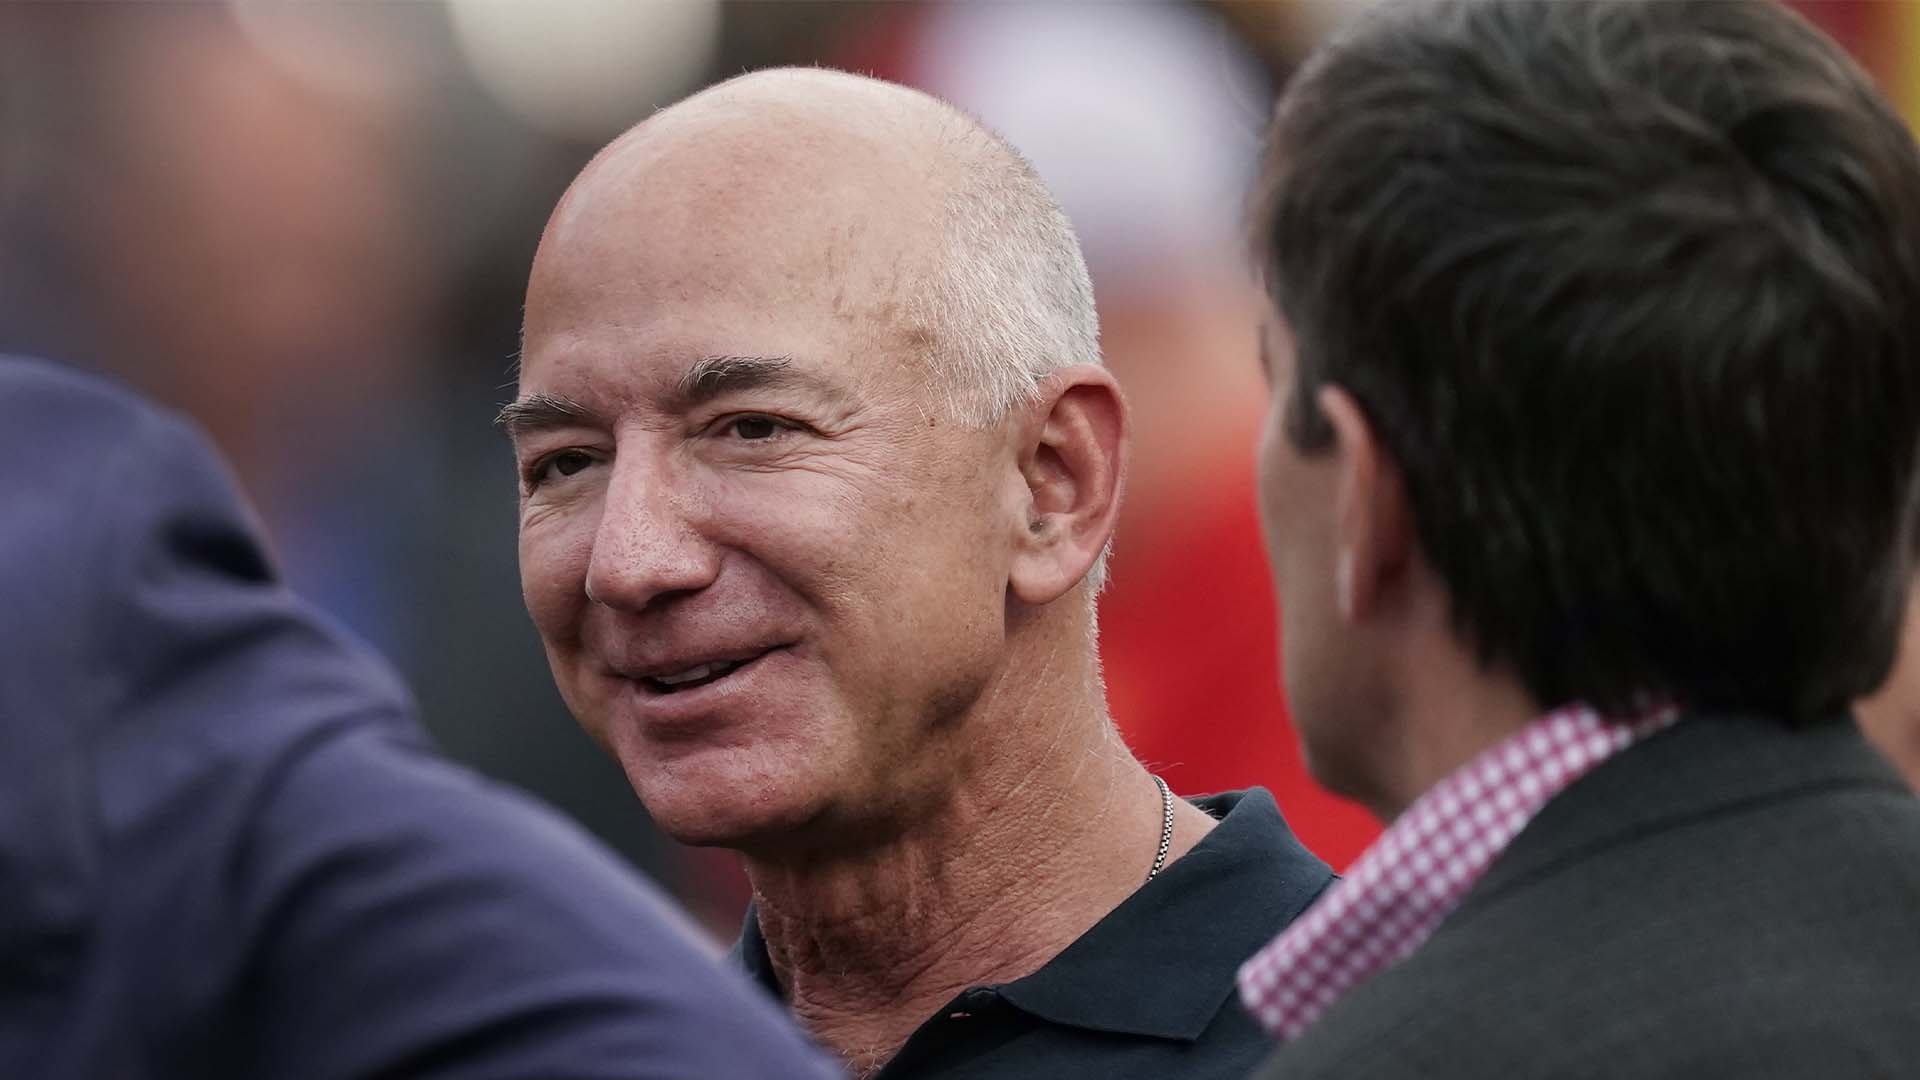 Le fondateur d’Amazon, Jeff Bezos, a déclaré qu’il donnerait la majorité de sa fortune au cours de sa vie.